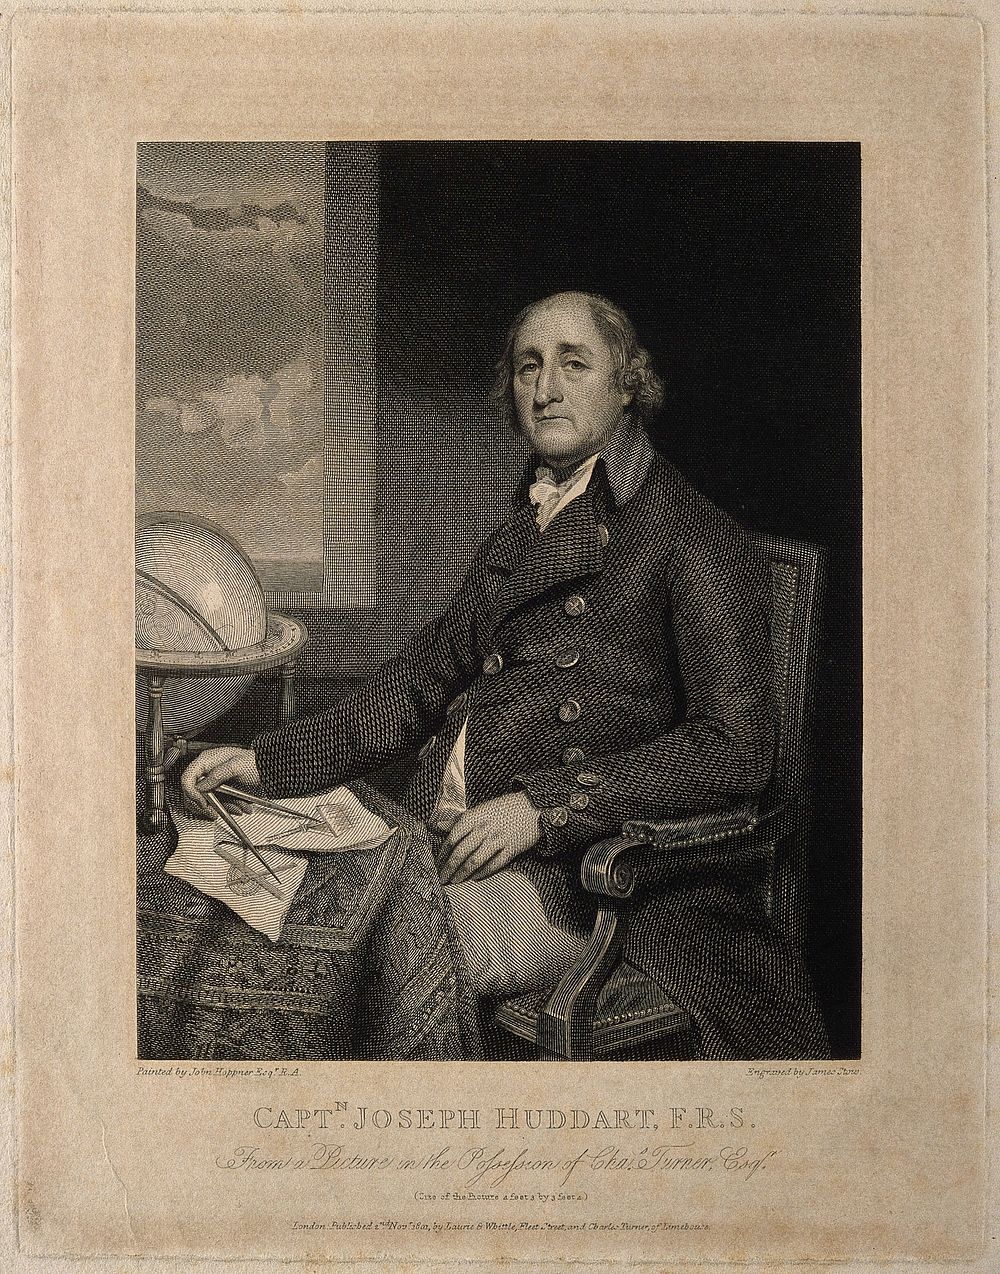 Joseph Huddart. Line engraving by J. Stow, 1801, after J. Hoppner.